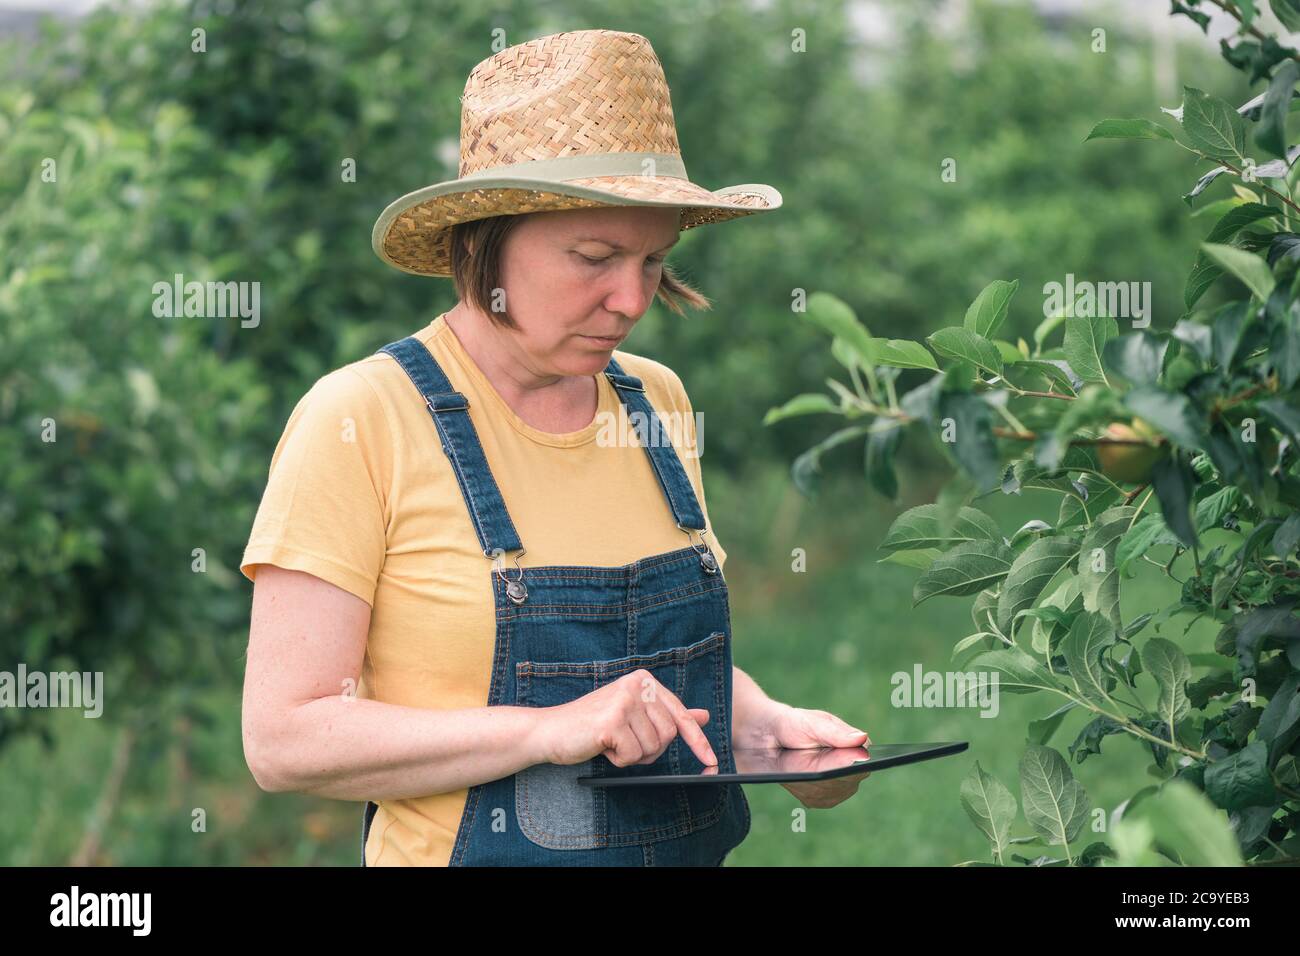 Weibliche Landwirtin mit Tablet-Computer in Bio-Apfelobstgarten, innovative Technologie in lokal angebauten Lebensmittelproduktionsprozess Stockfoto